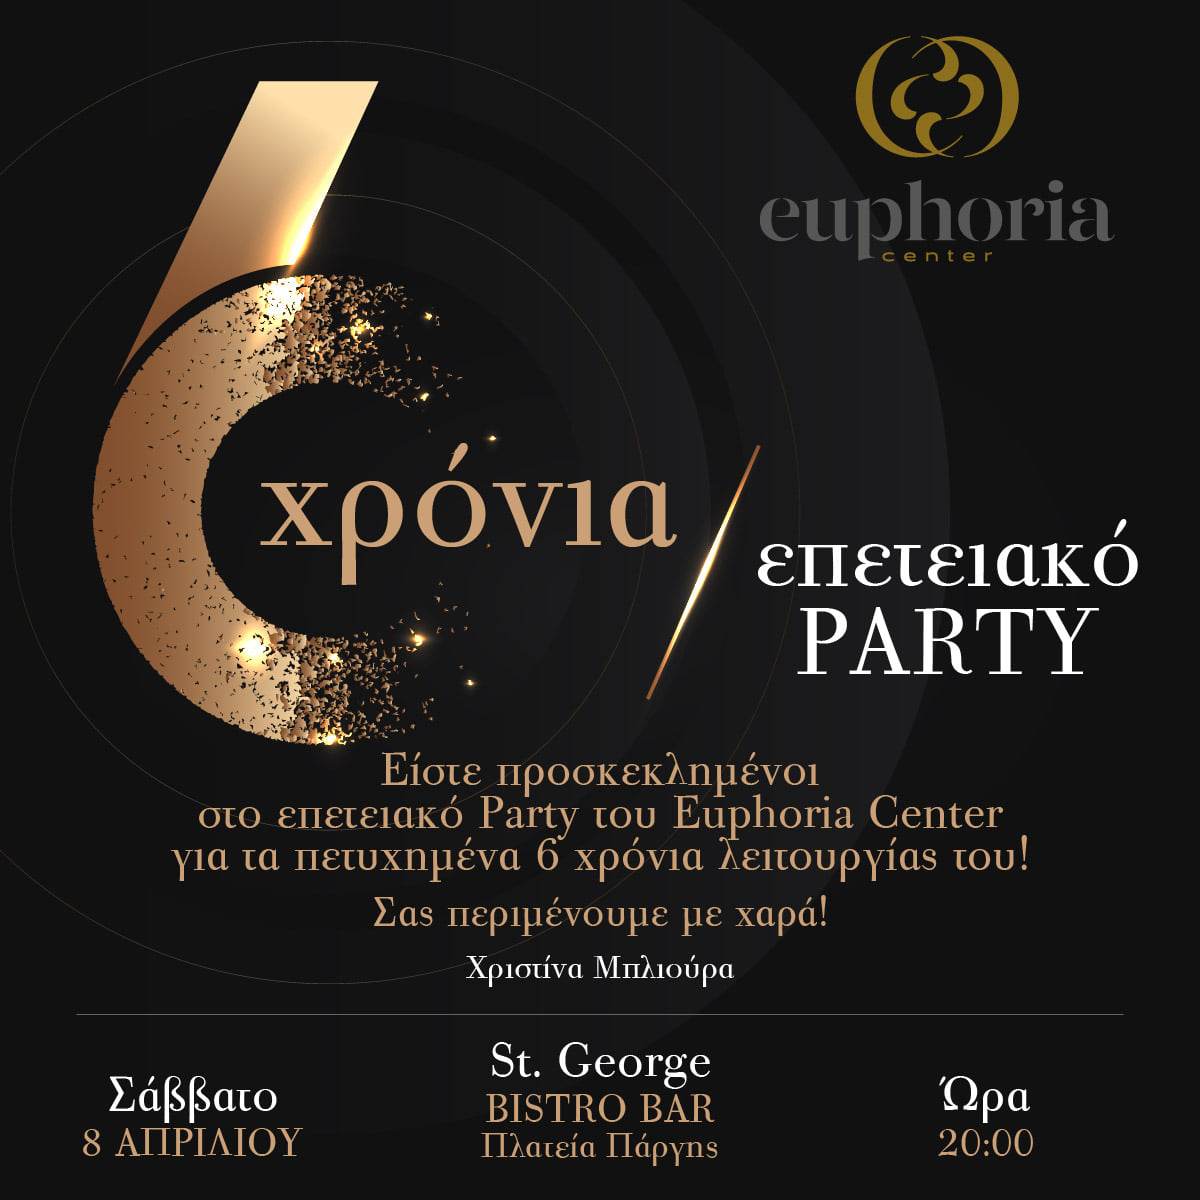 Επετειακό party eurphoria center ioannina city